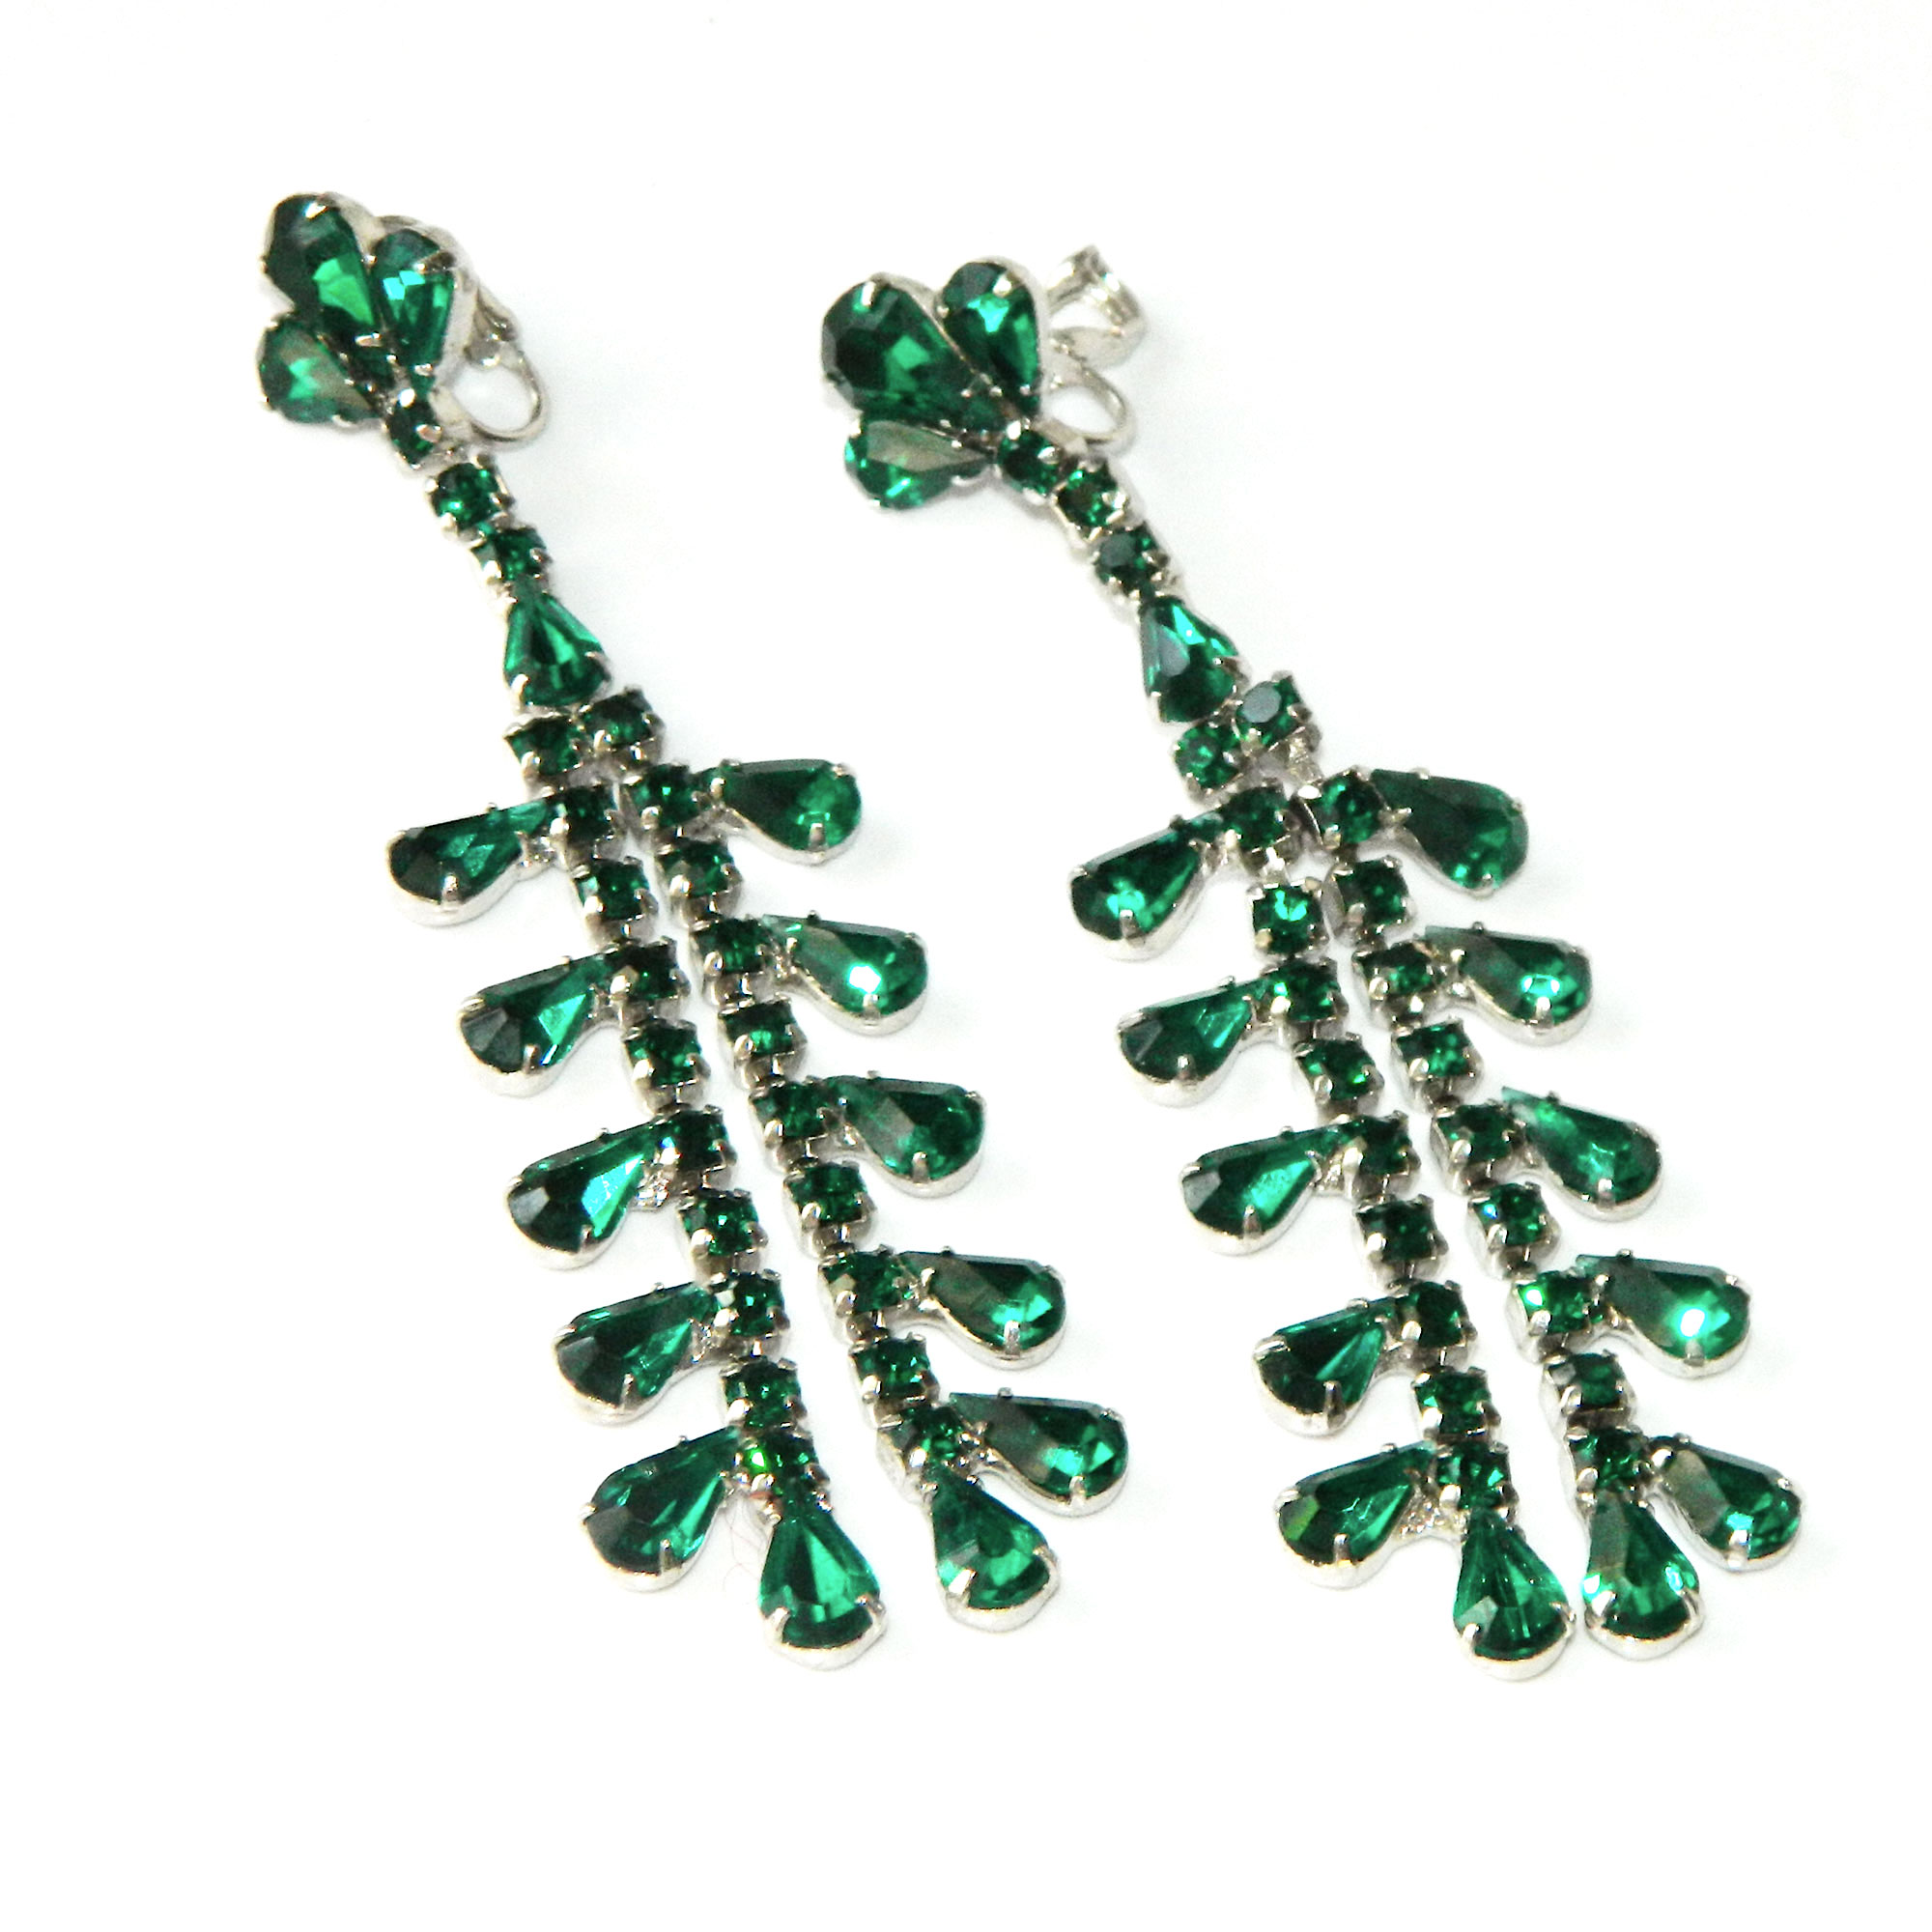 Green rhinestone drop earrings